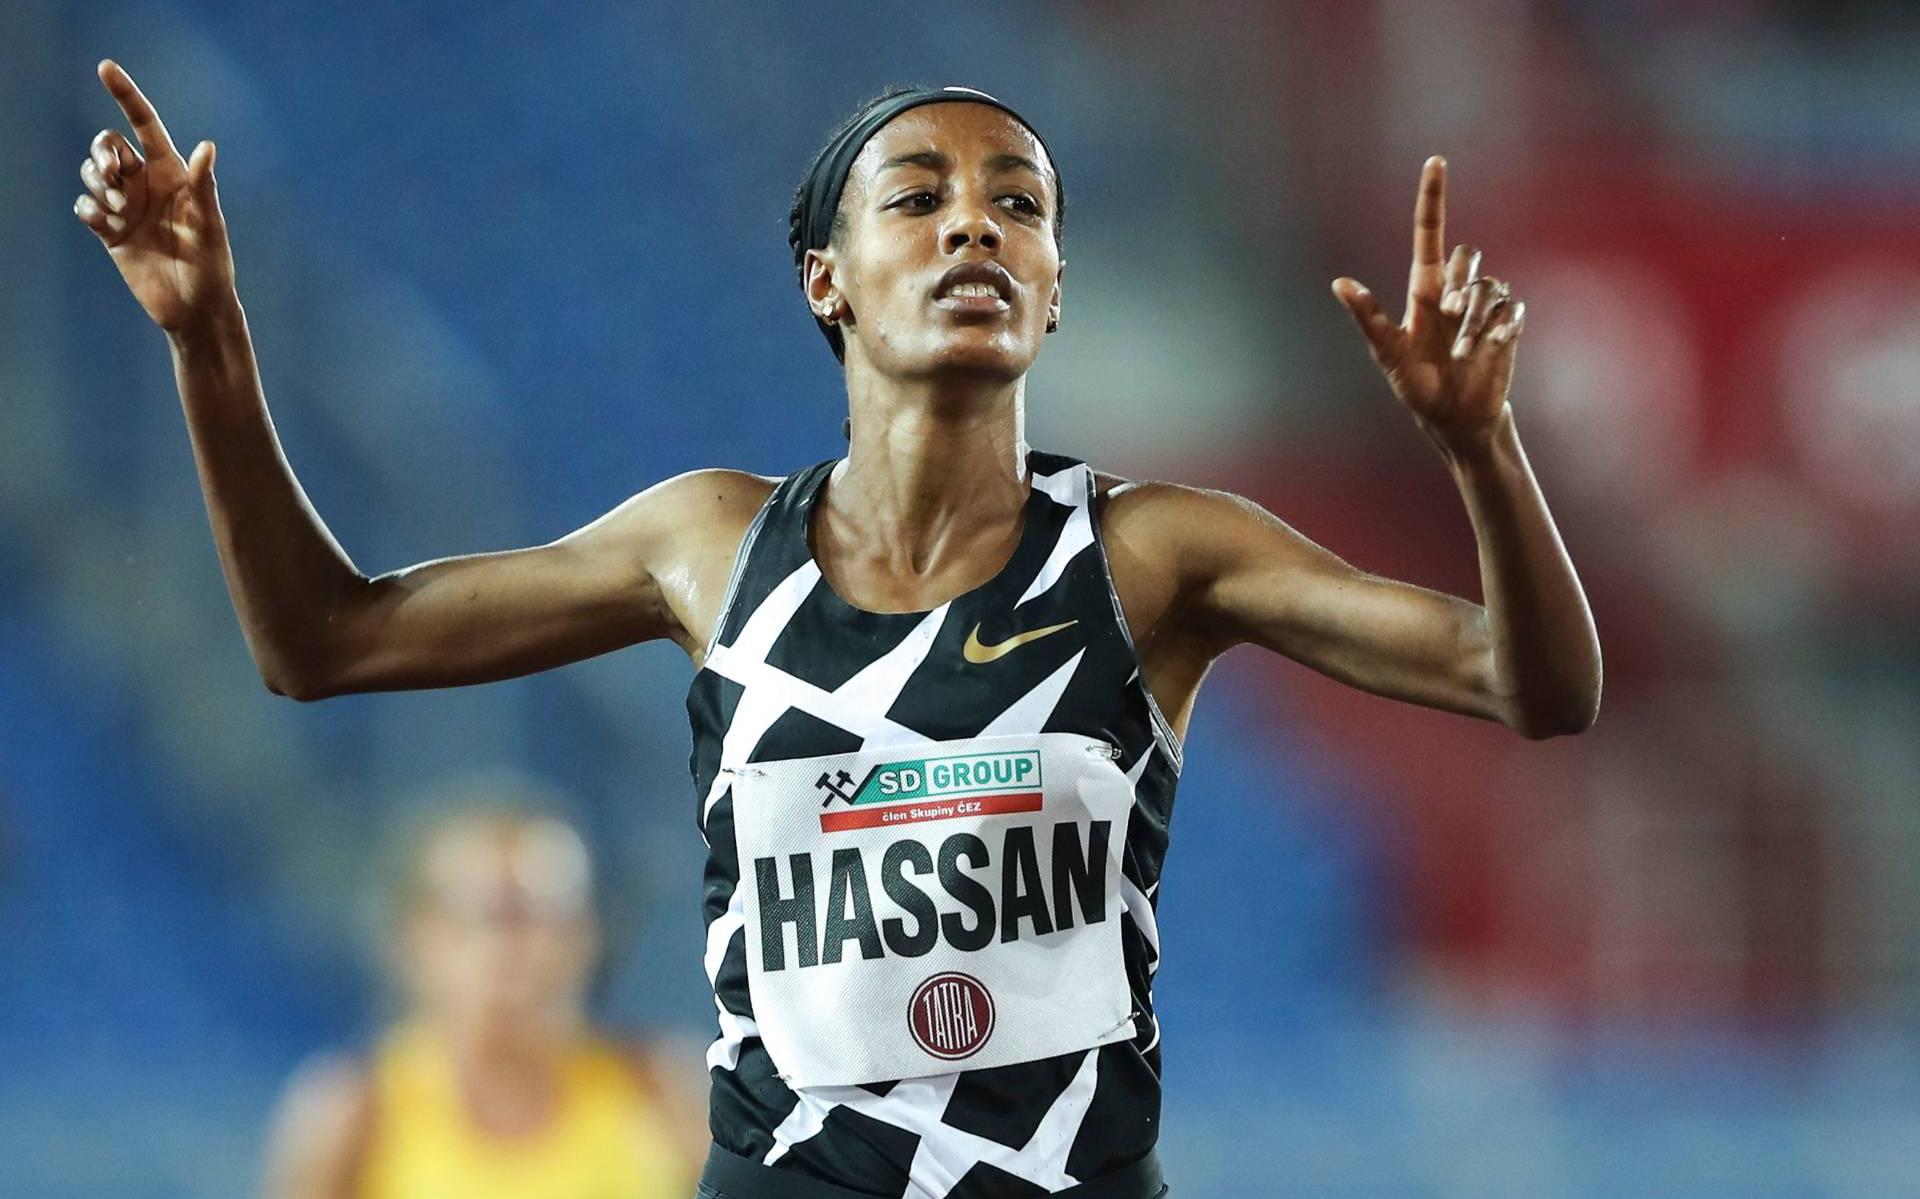 Hassan verbetert Europees record op 10.000 meter